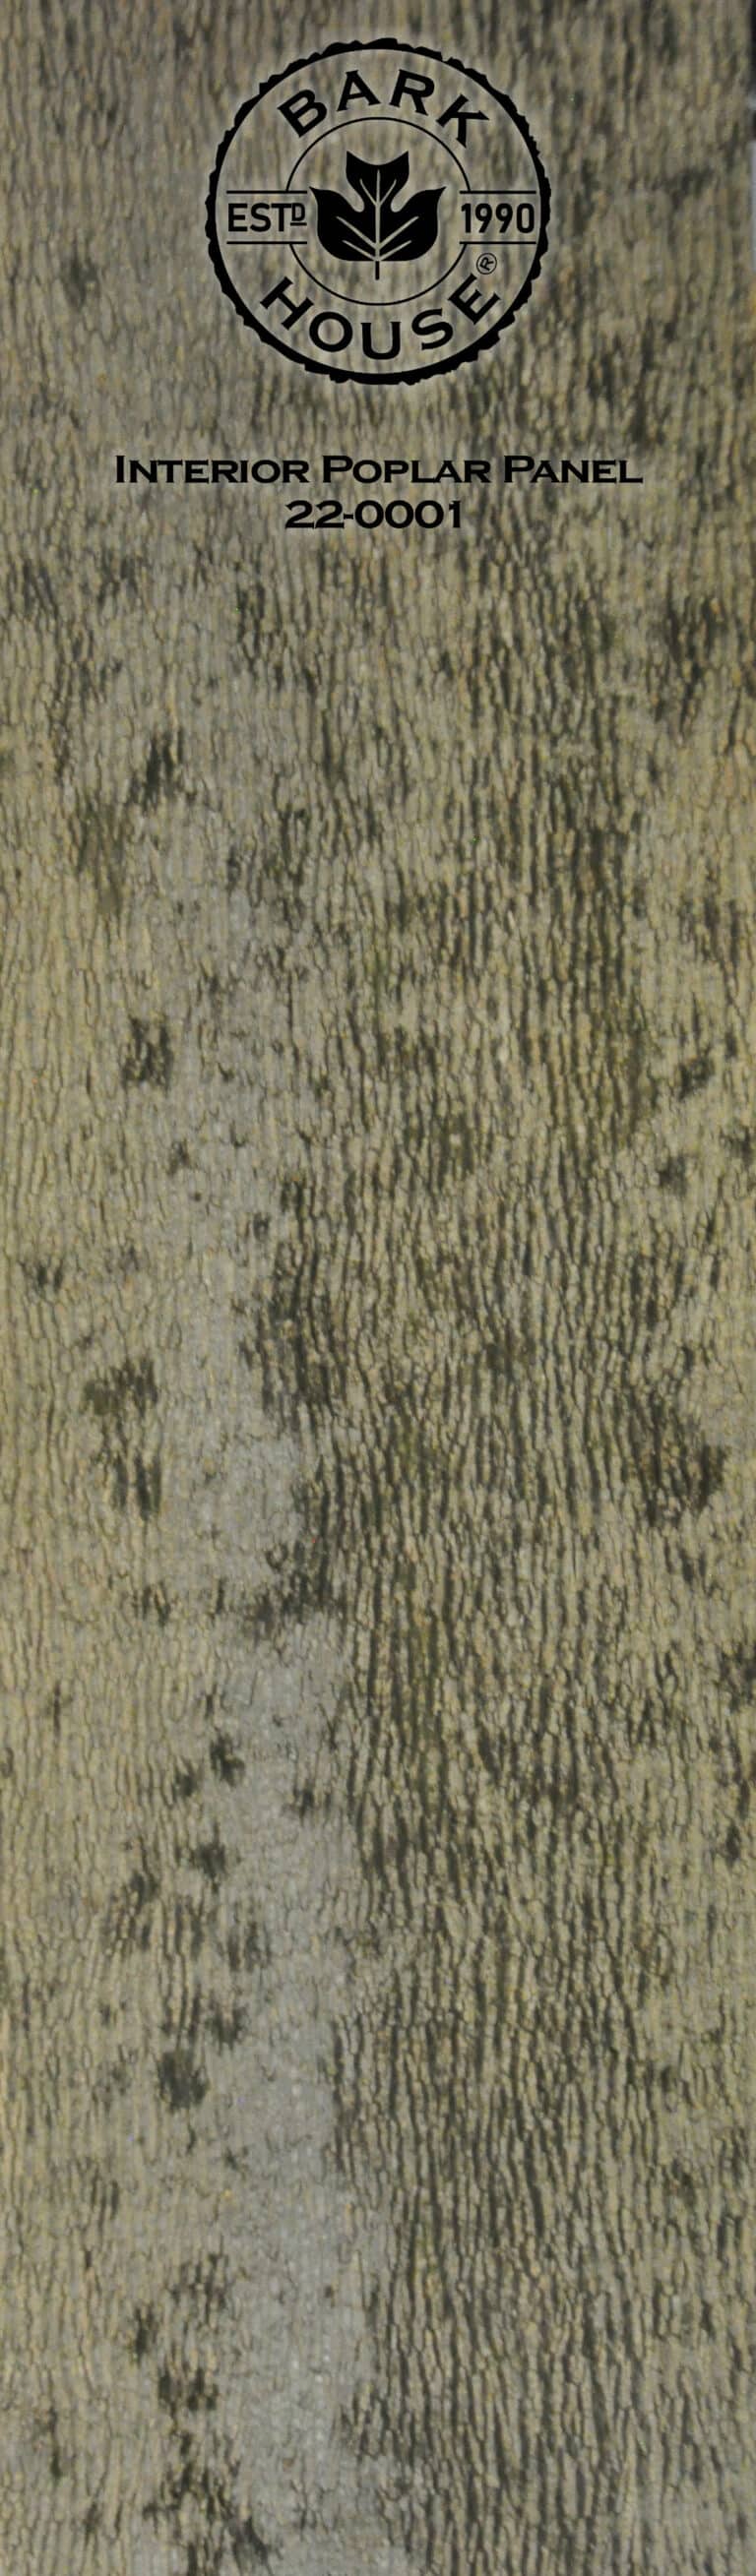 Bark House poplar bark panel SKU POPP-INT-22-0001